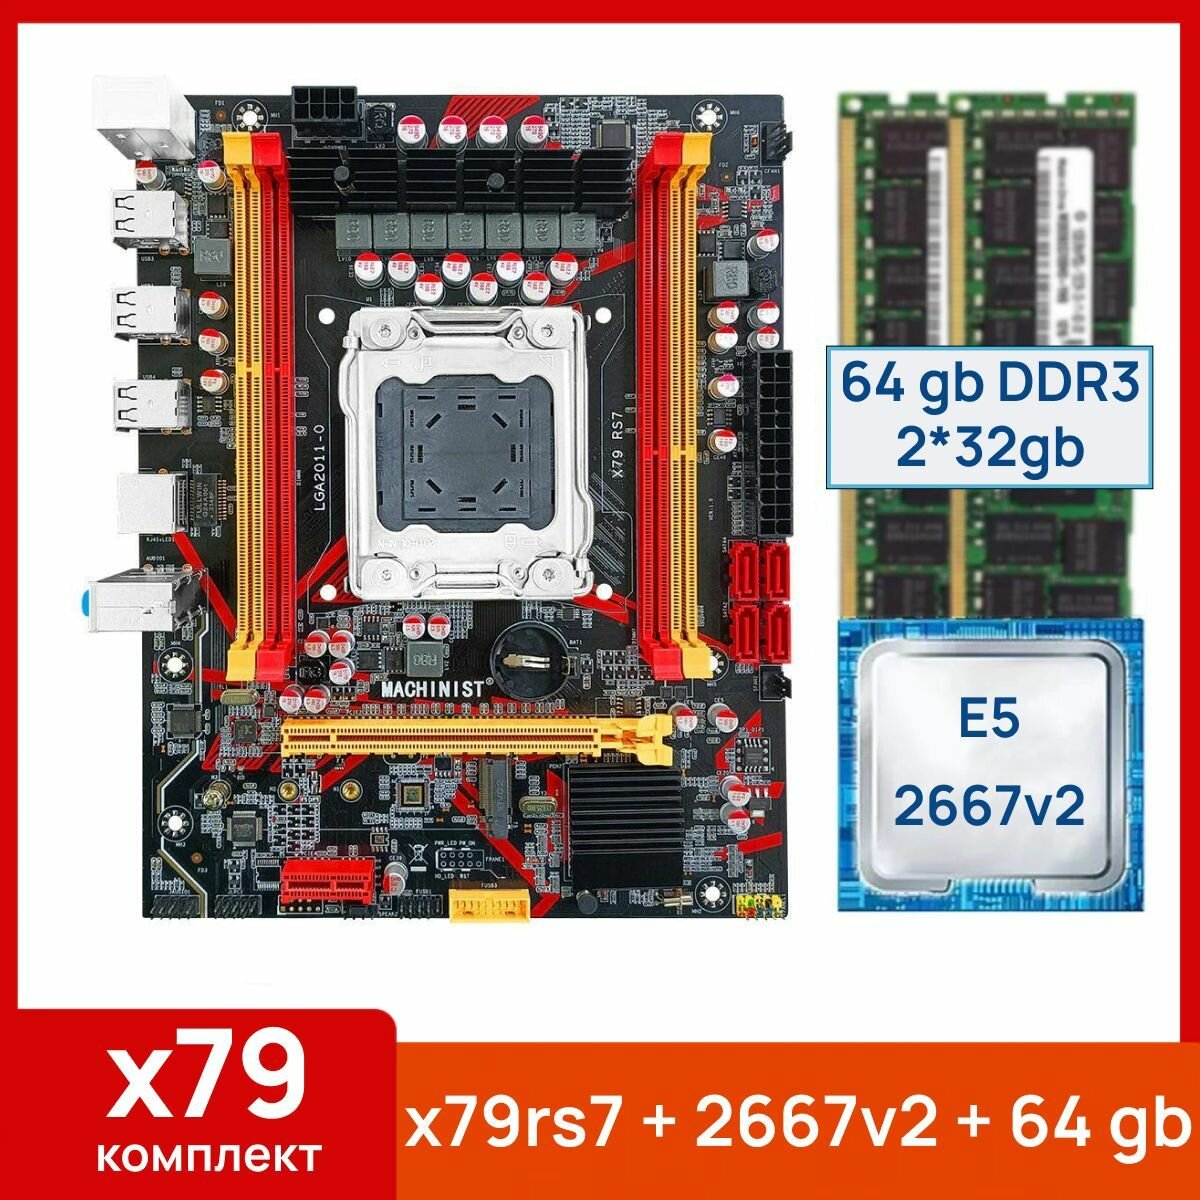 Комплект: Материнская плата Machinist RS-7 + Процессор Xeon E5 2667v2 + 64 gb(2x32gb) DDR3 серверная